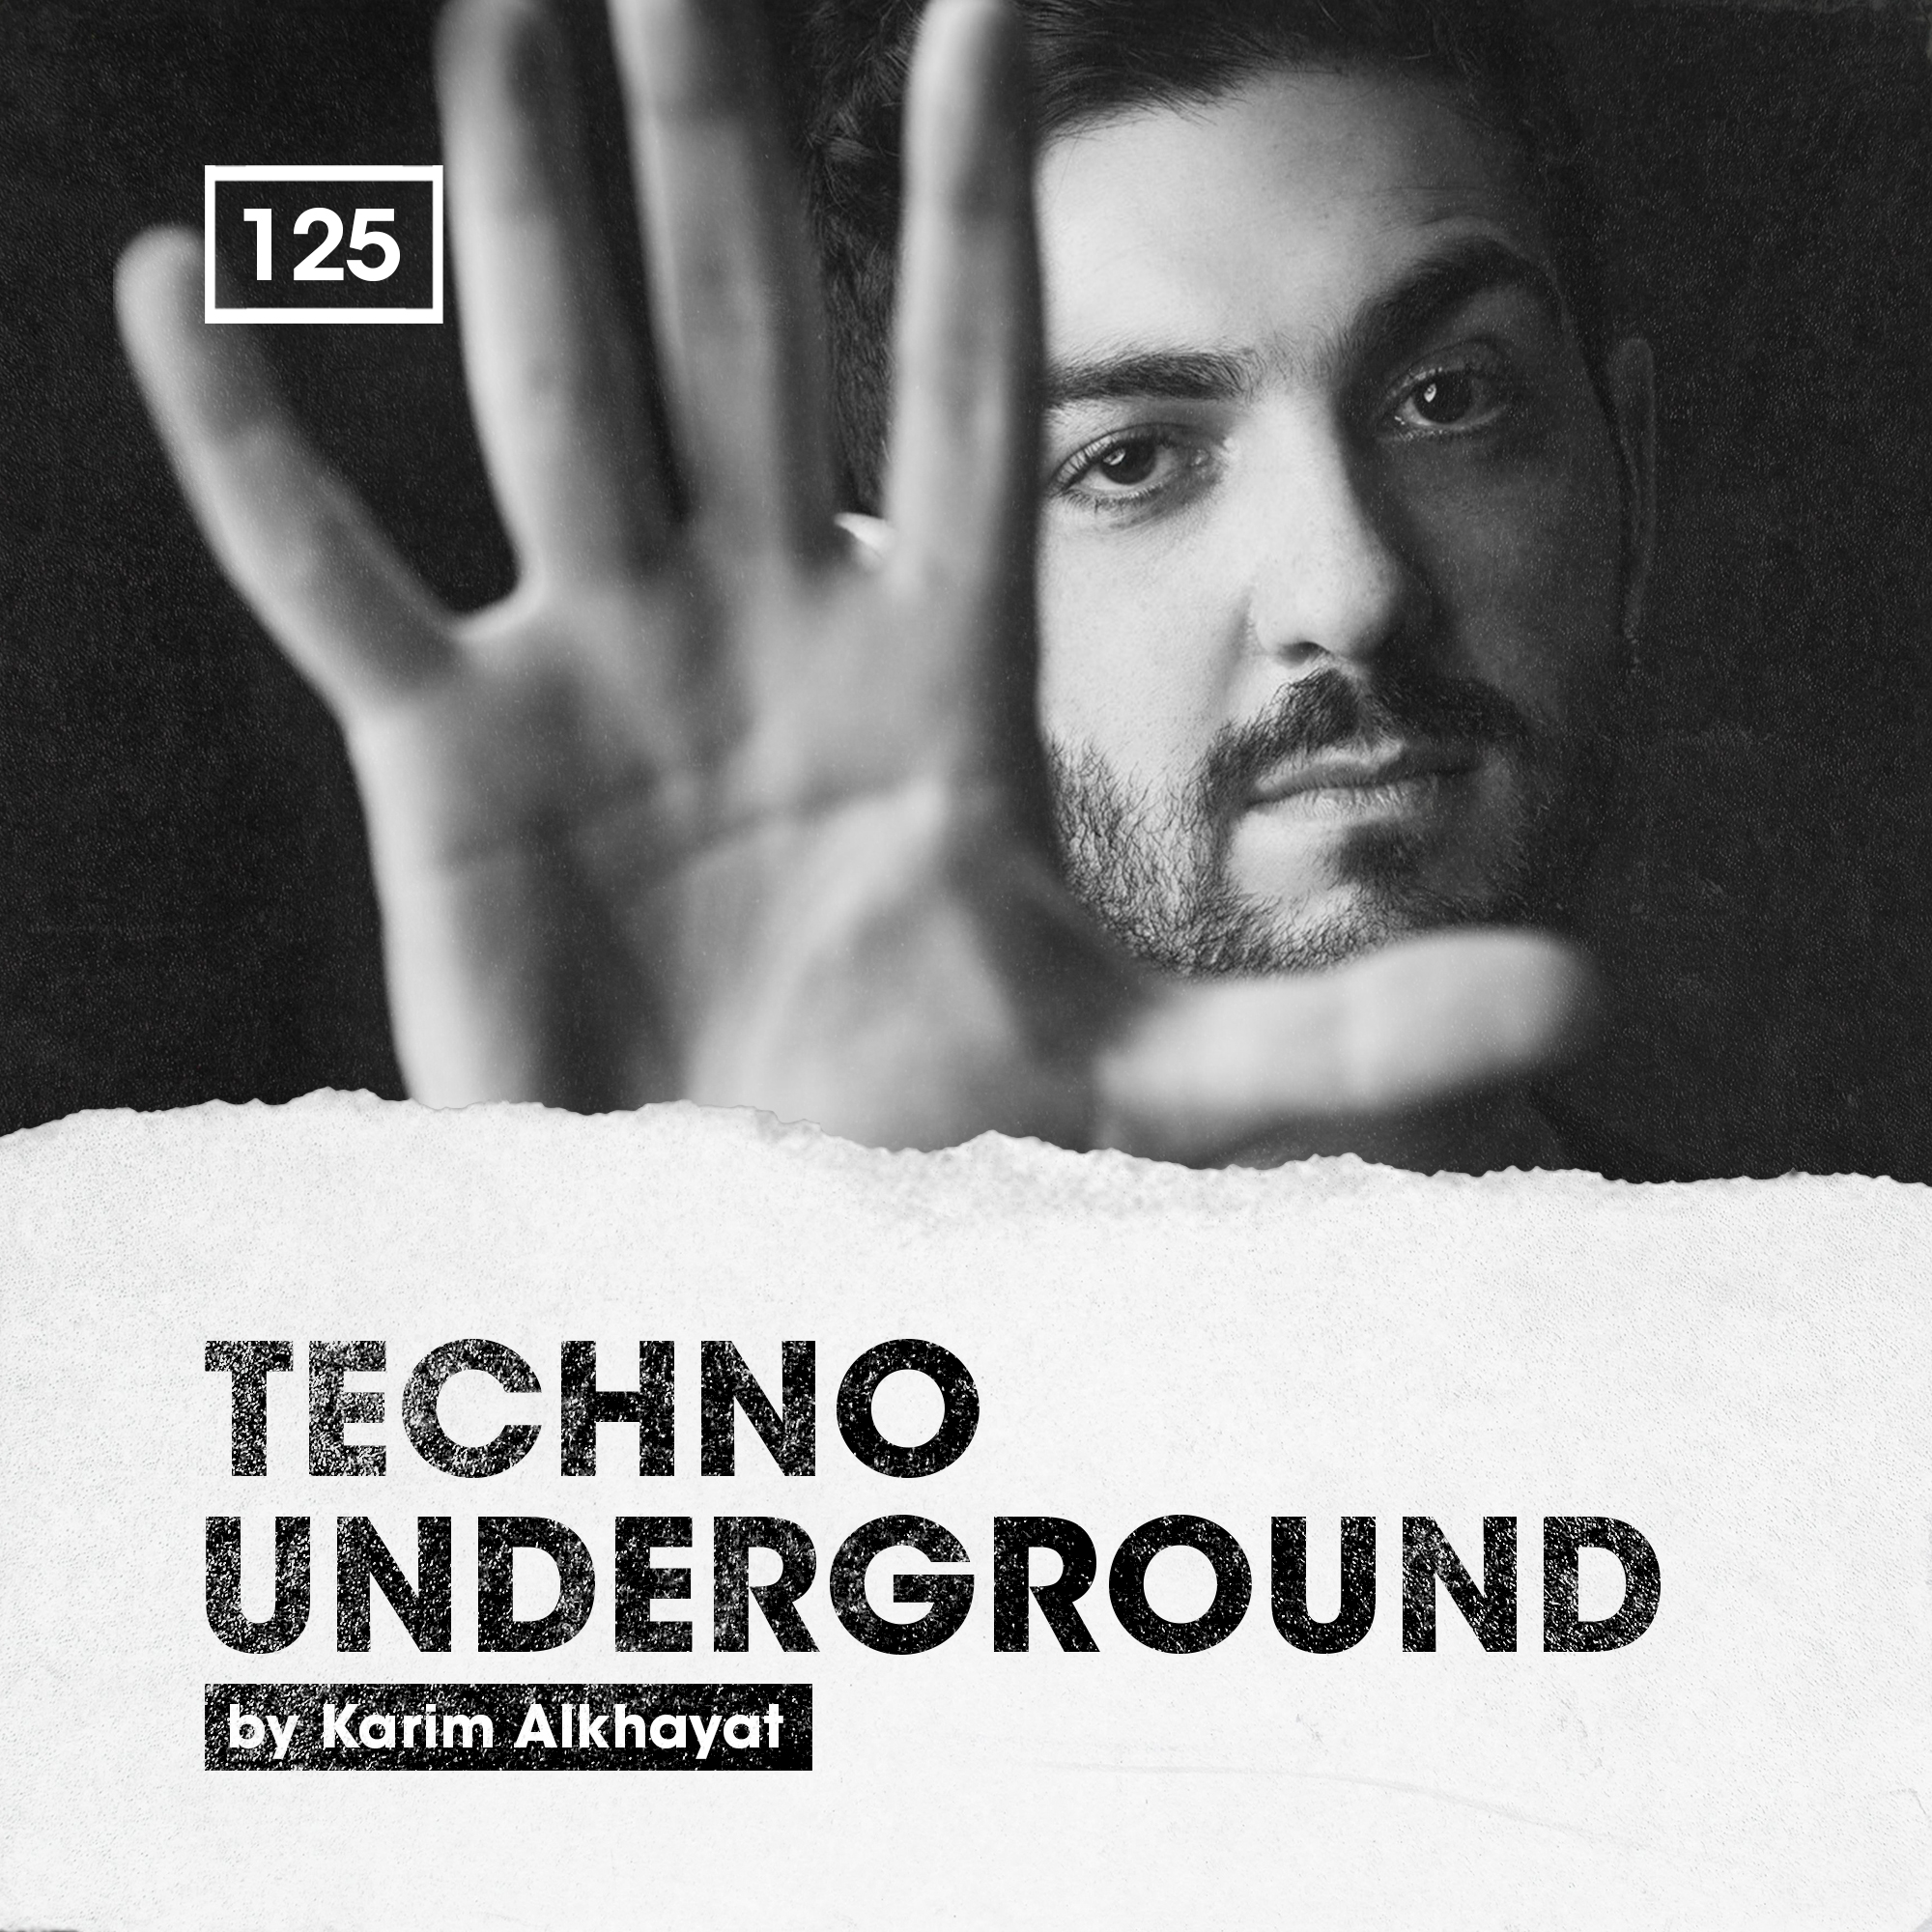 Bingoshakerz - Techno Underground by Karim Alkhayat